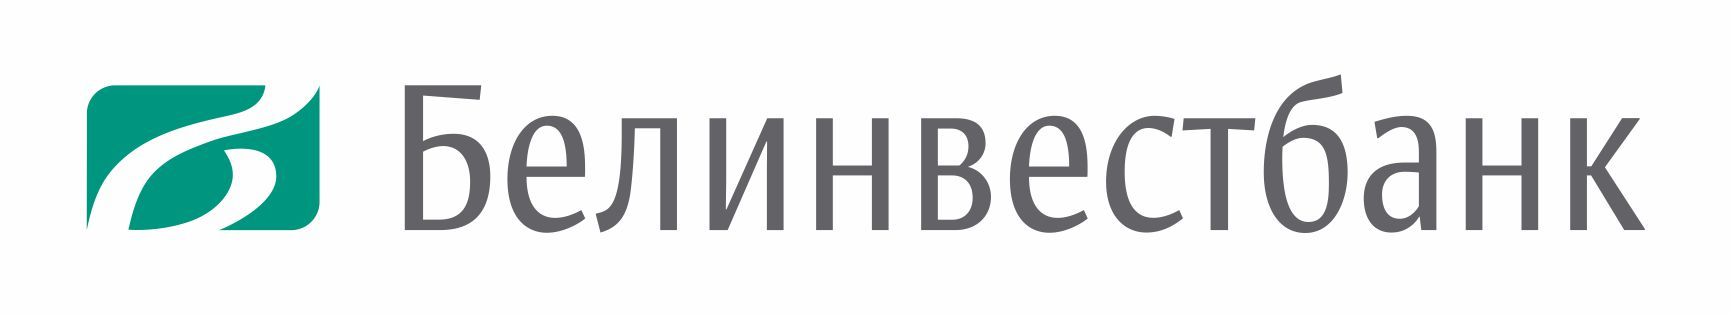 BIB_logo horizontal_RU_no descriptor.jpg